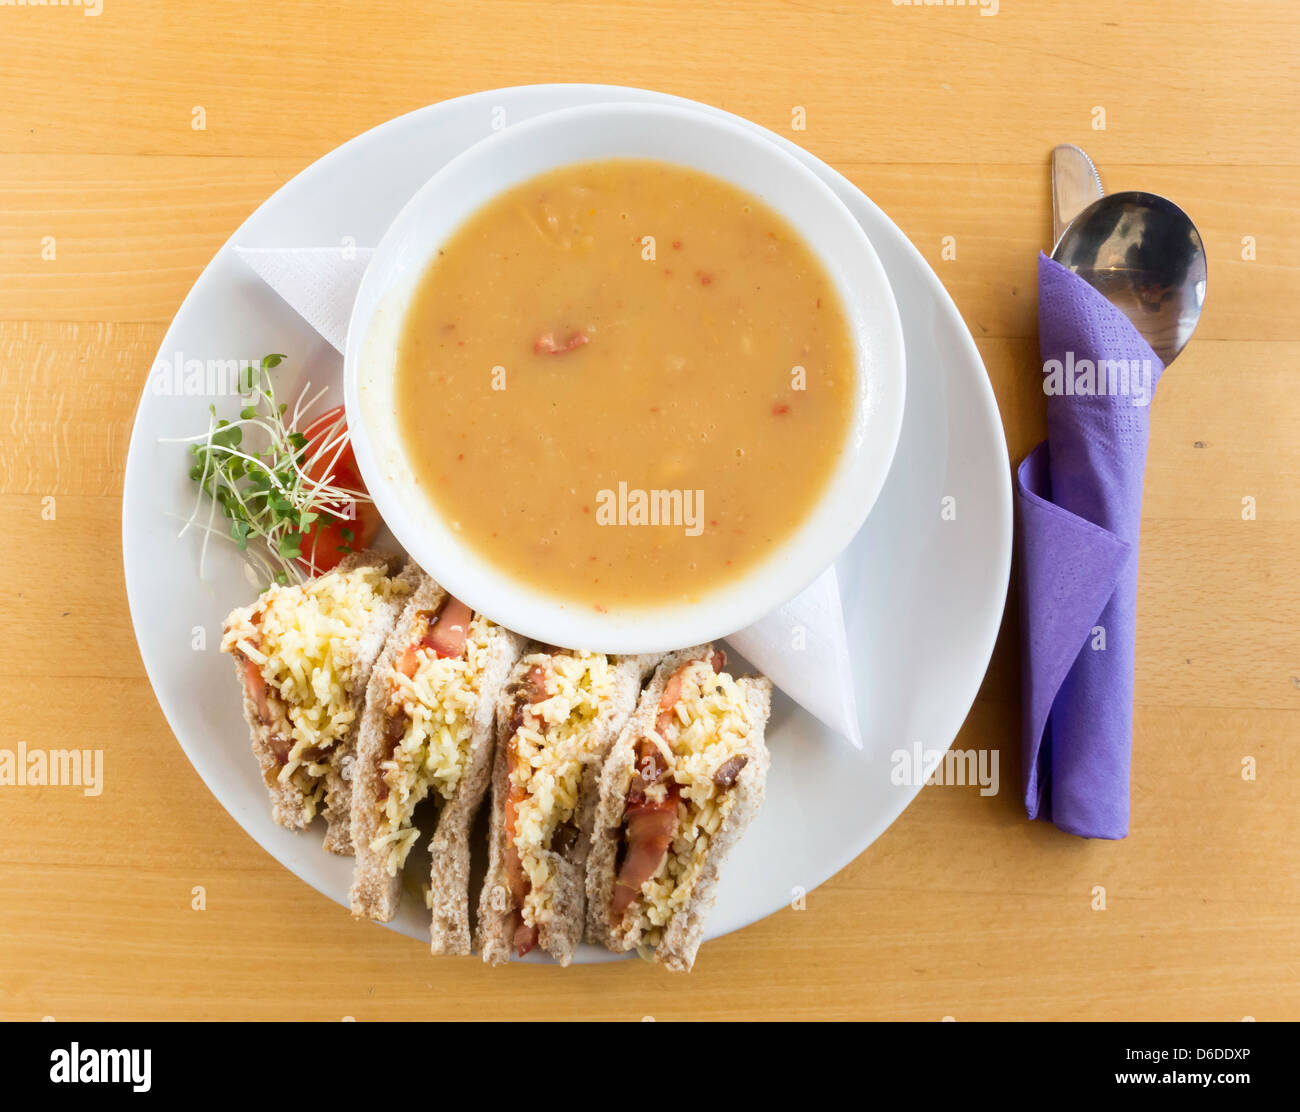 Café le déjeuner un bol de soupe de pommes de terre et chorizo avec un sandwich tomate et fromage cheddar Banque D'Images